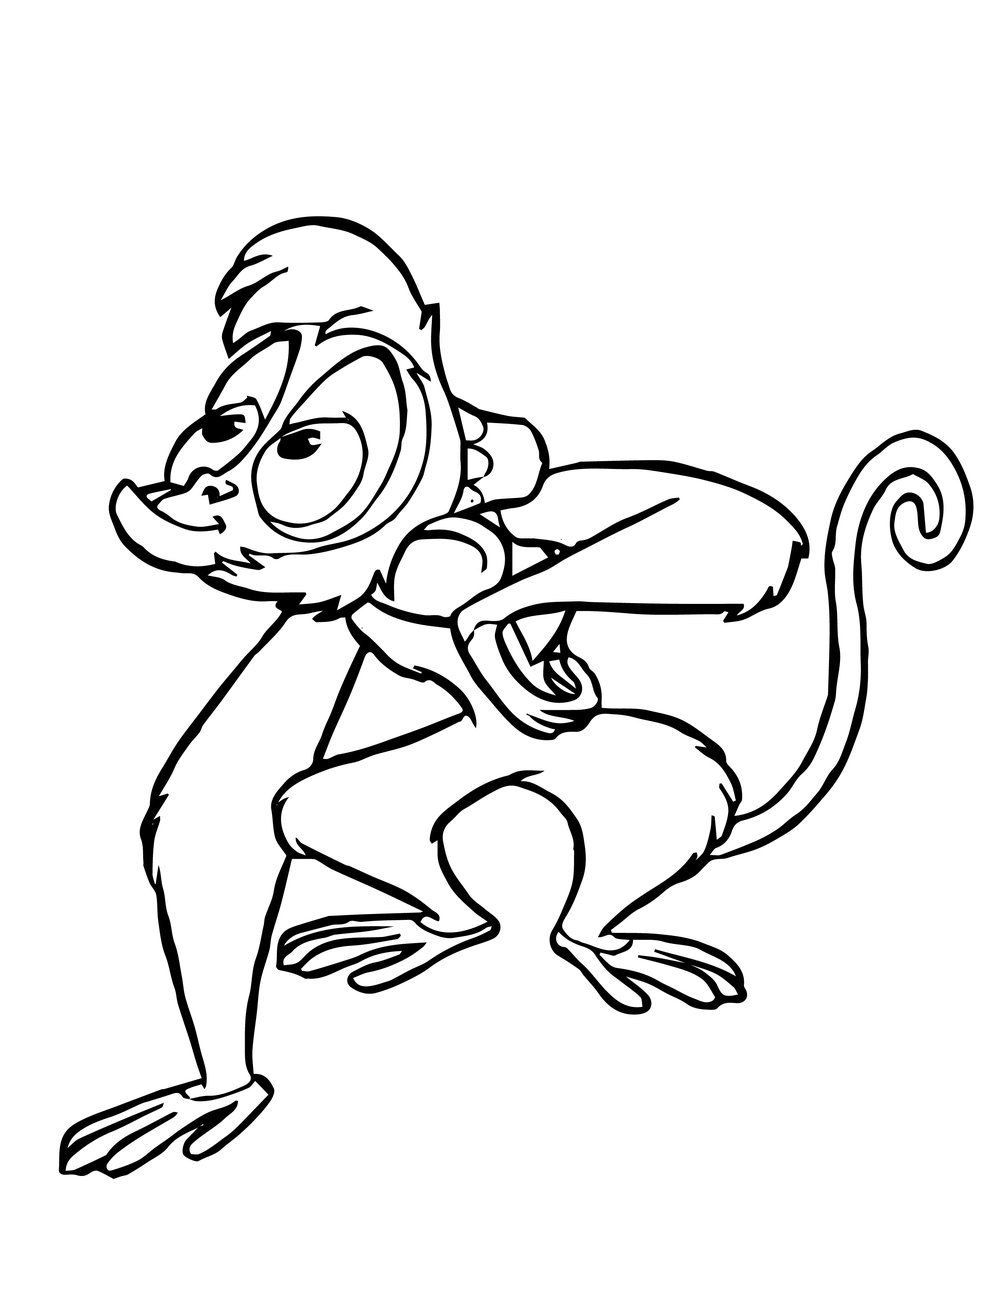 Tranh con khỉ tô màu dễ thương